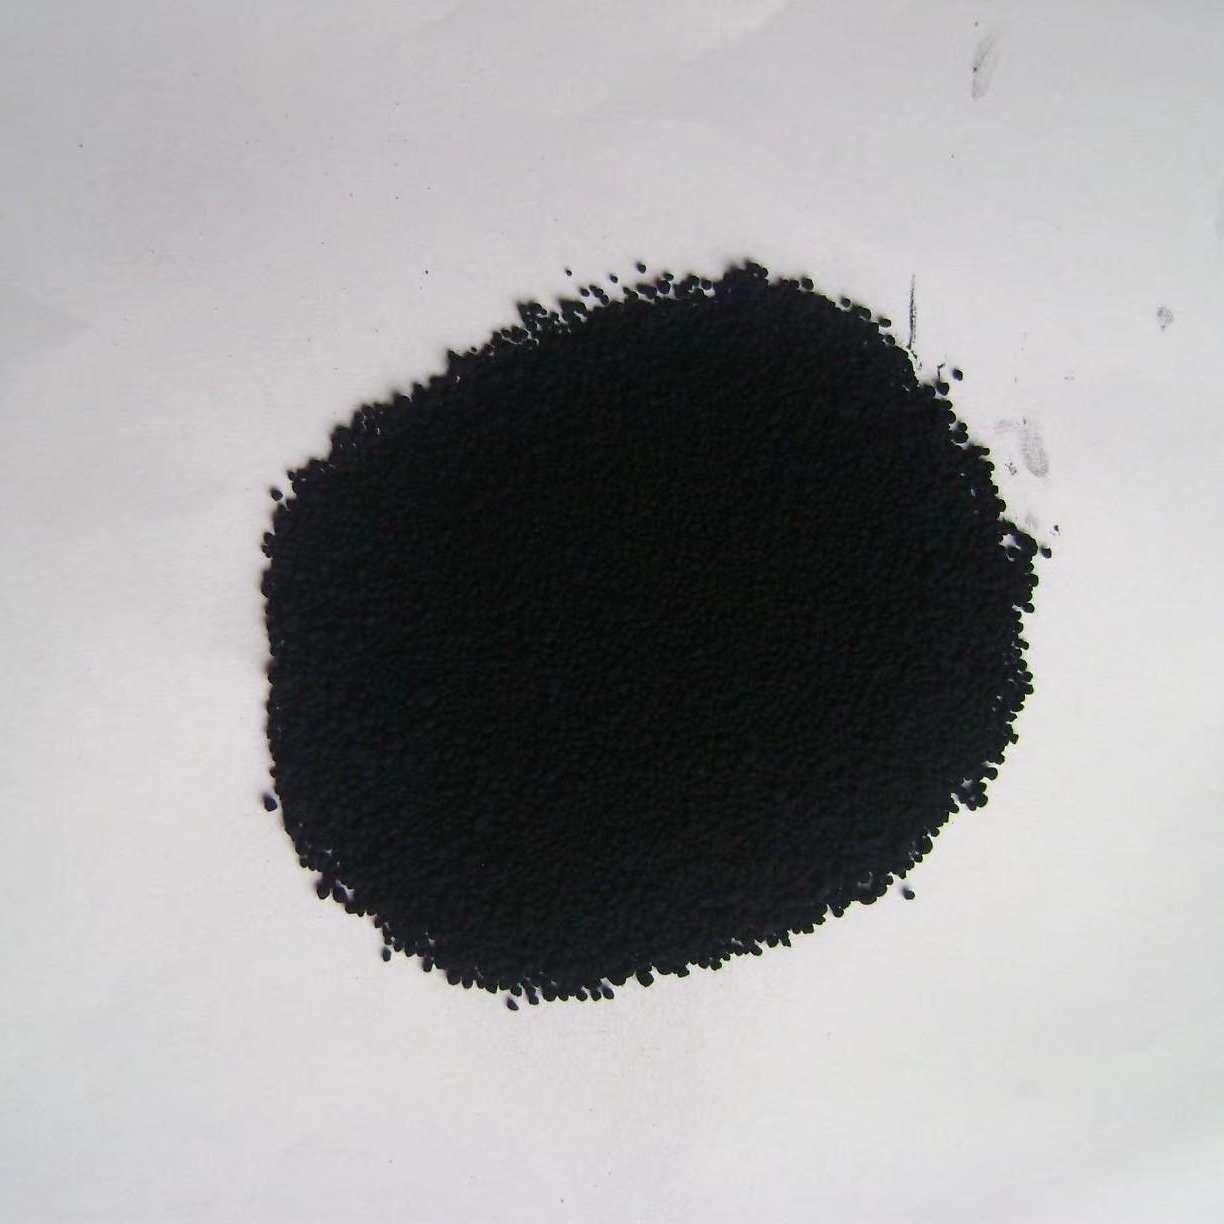 湿法颗粒 碳黑橡胶 炭黑生产厂家 N330  西德利